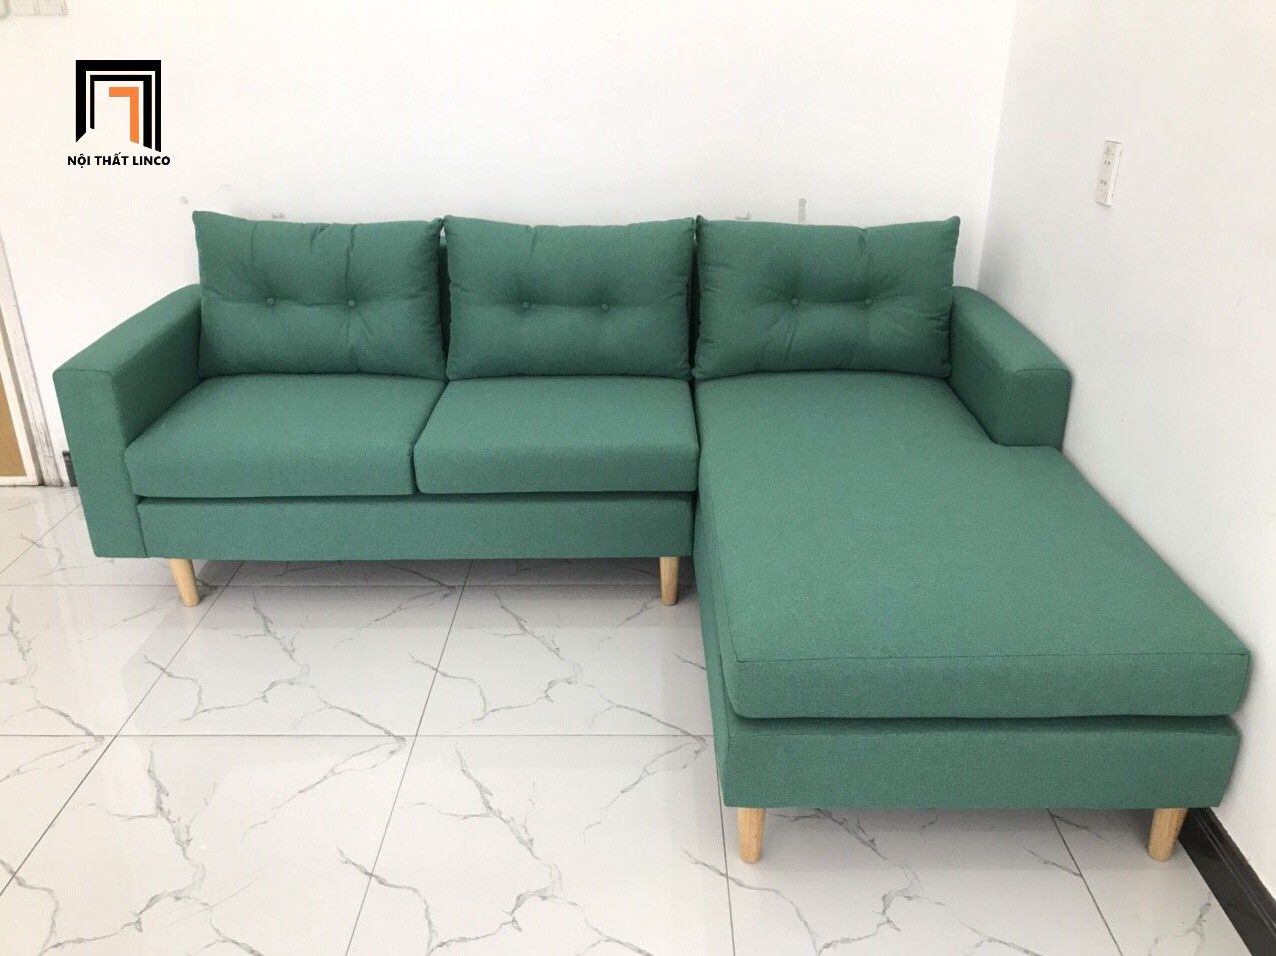  Bộ ghế sofa góc L 2m2 x 1m6 màu xanh ngọc nhỏ gọn 